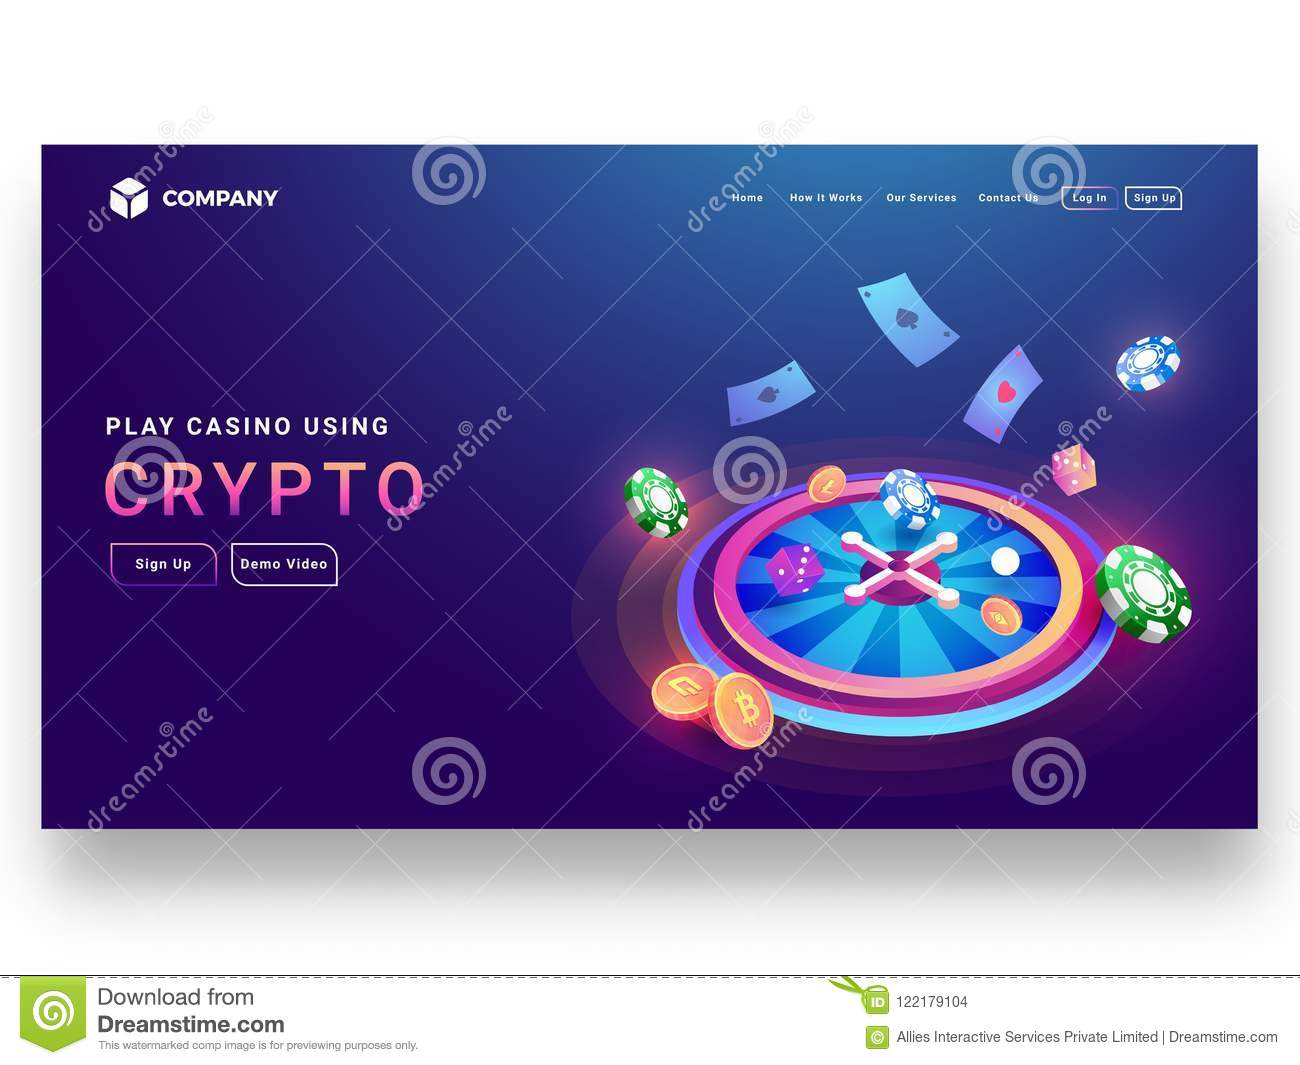 Bitstarz bitcoin casino bono sin depósito codes 2021